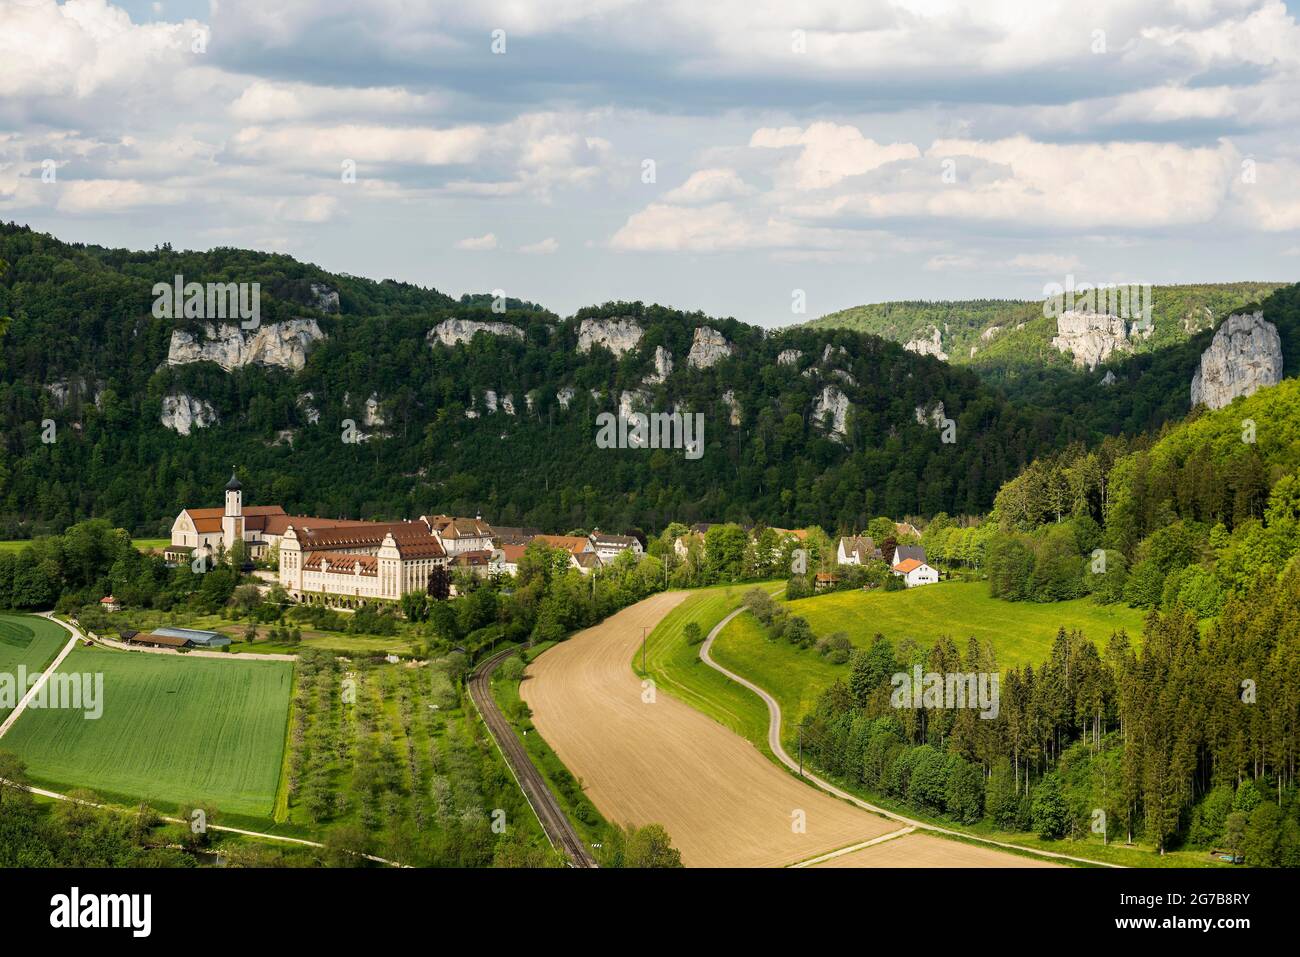 Vista dal Knopfmacherfelsen al Monastero di Beuron, vicino a Fridingen, Parco Naturale dell'Alto Danubio, alta Valle del Danubio, Danubio, Alb Svevo Foto Stock